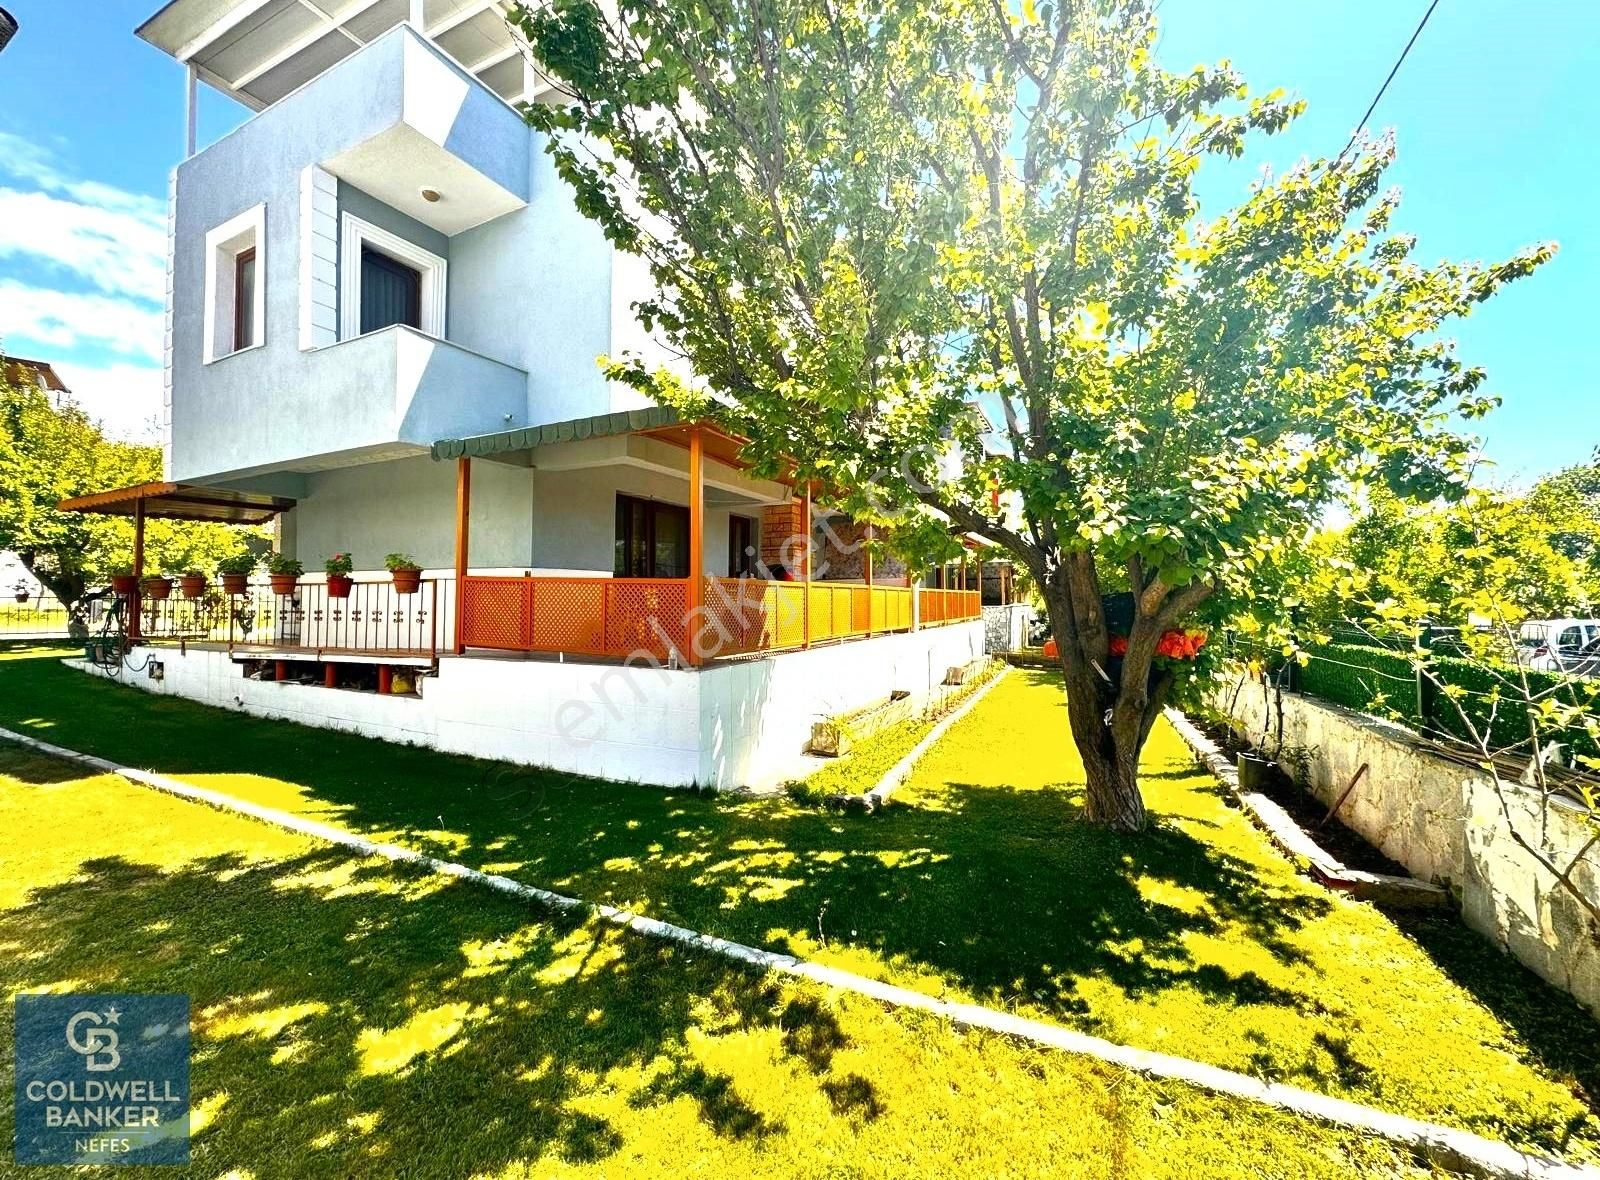 Ezine Dalyan Köyü Satılık Villa Geyikli Odunluk İskelesinde Site İçi Satılık 4+1 160 m2 Villa!